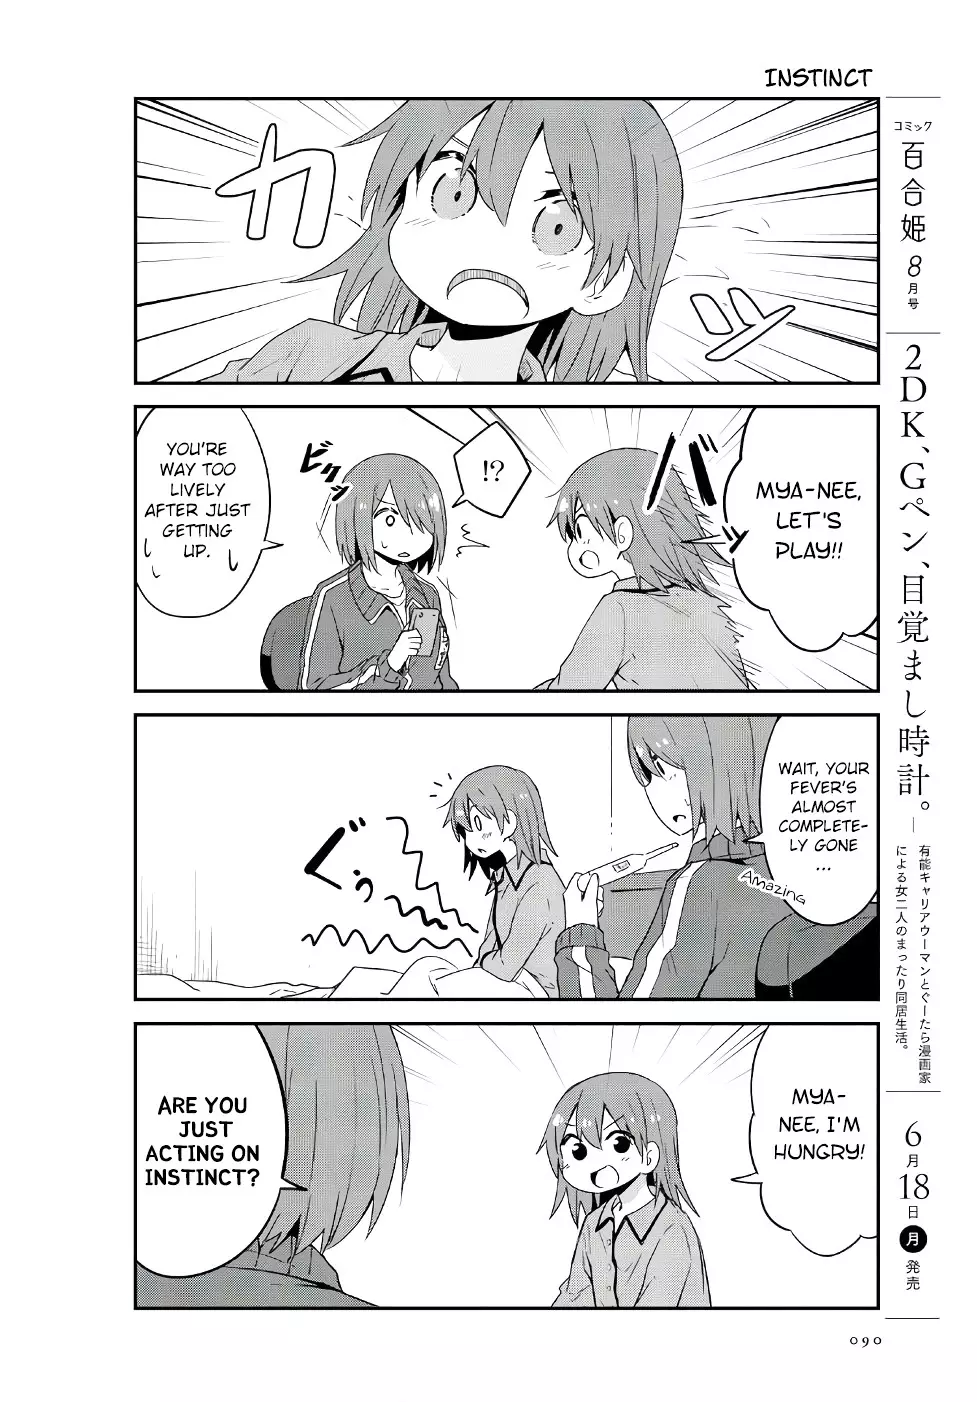 Watashi Ni Tenshi Ga Maiorita! - 31 page 8